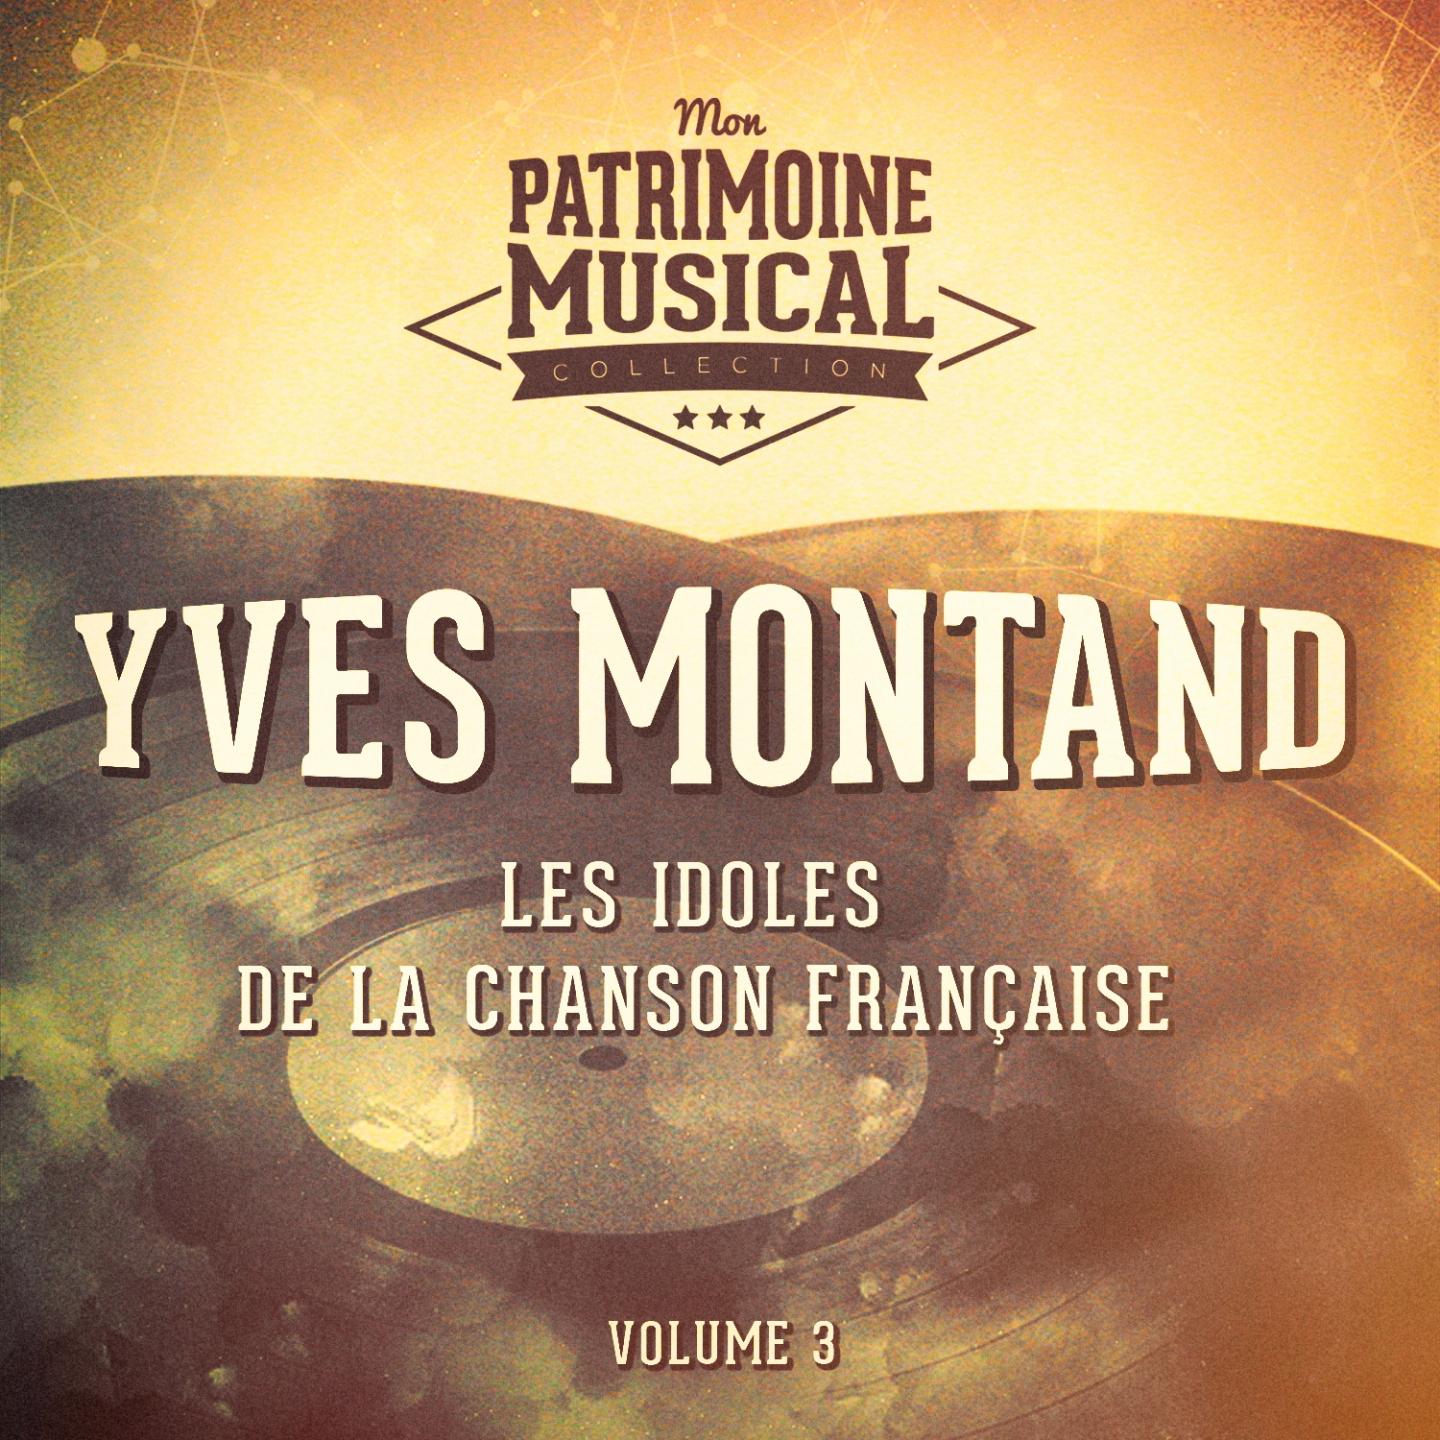 Les idoles de la chanson fran aise : Yves Montand, Vol. 3